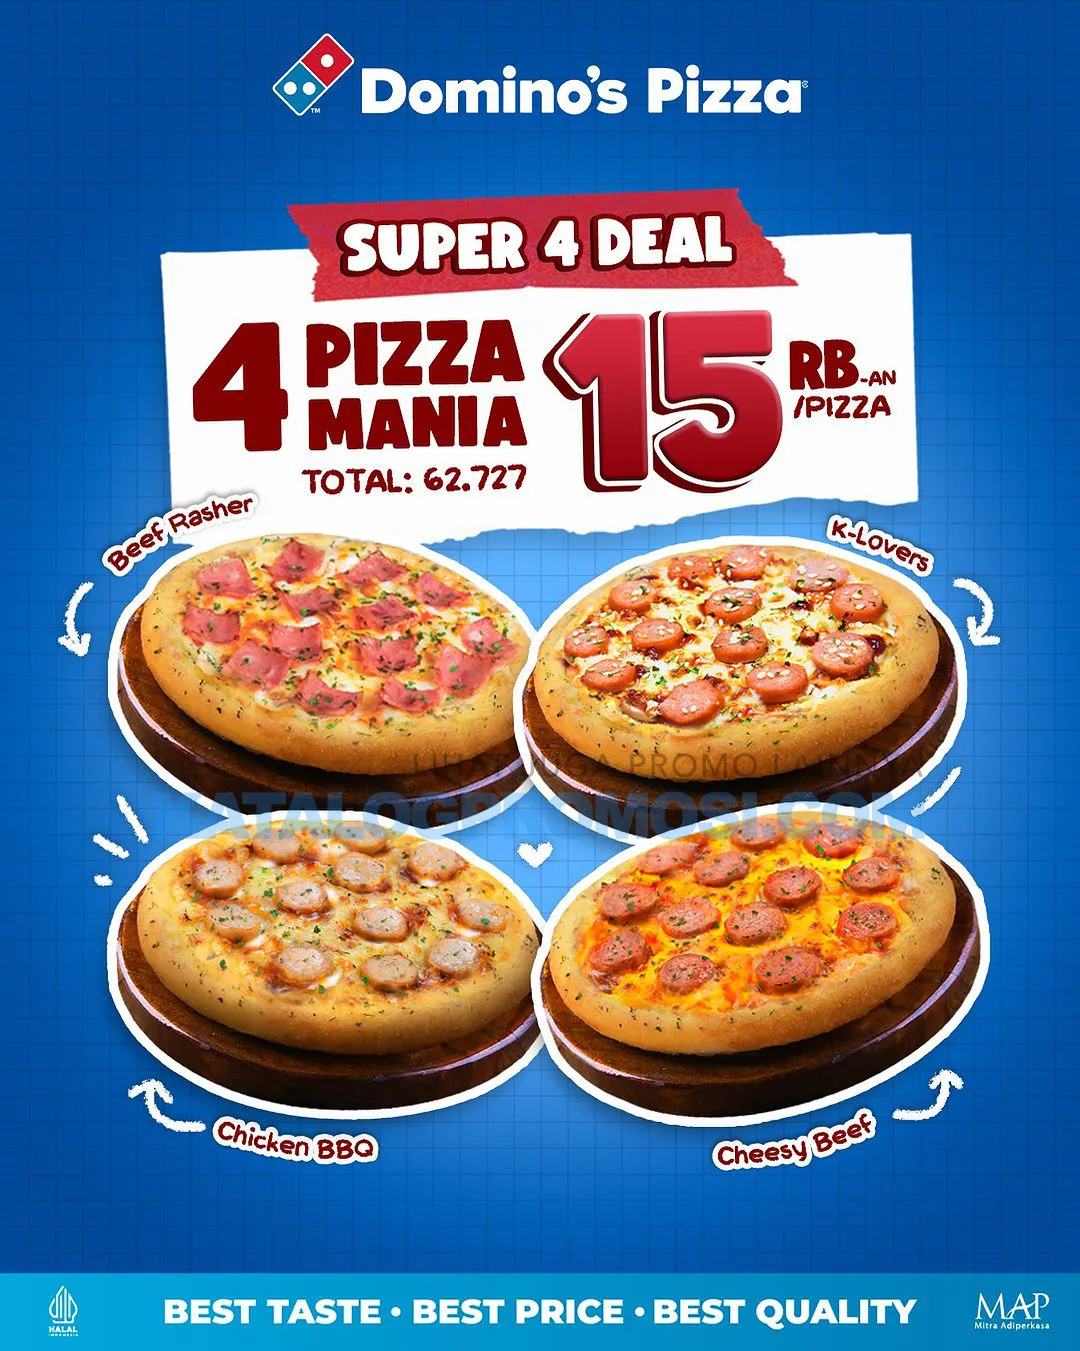 DOMINO'S PIZZA Promo SUPER 4 DEAL - Beli 4 Pizza Mania Hanya Rp. 15 Ribuan/ Pizza*